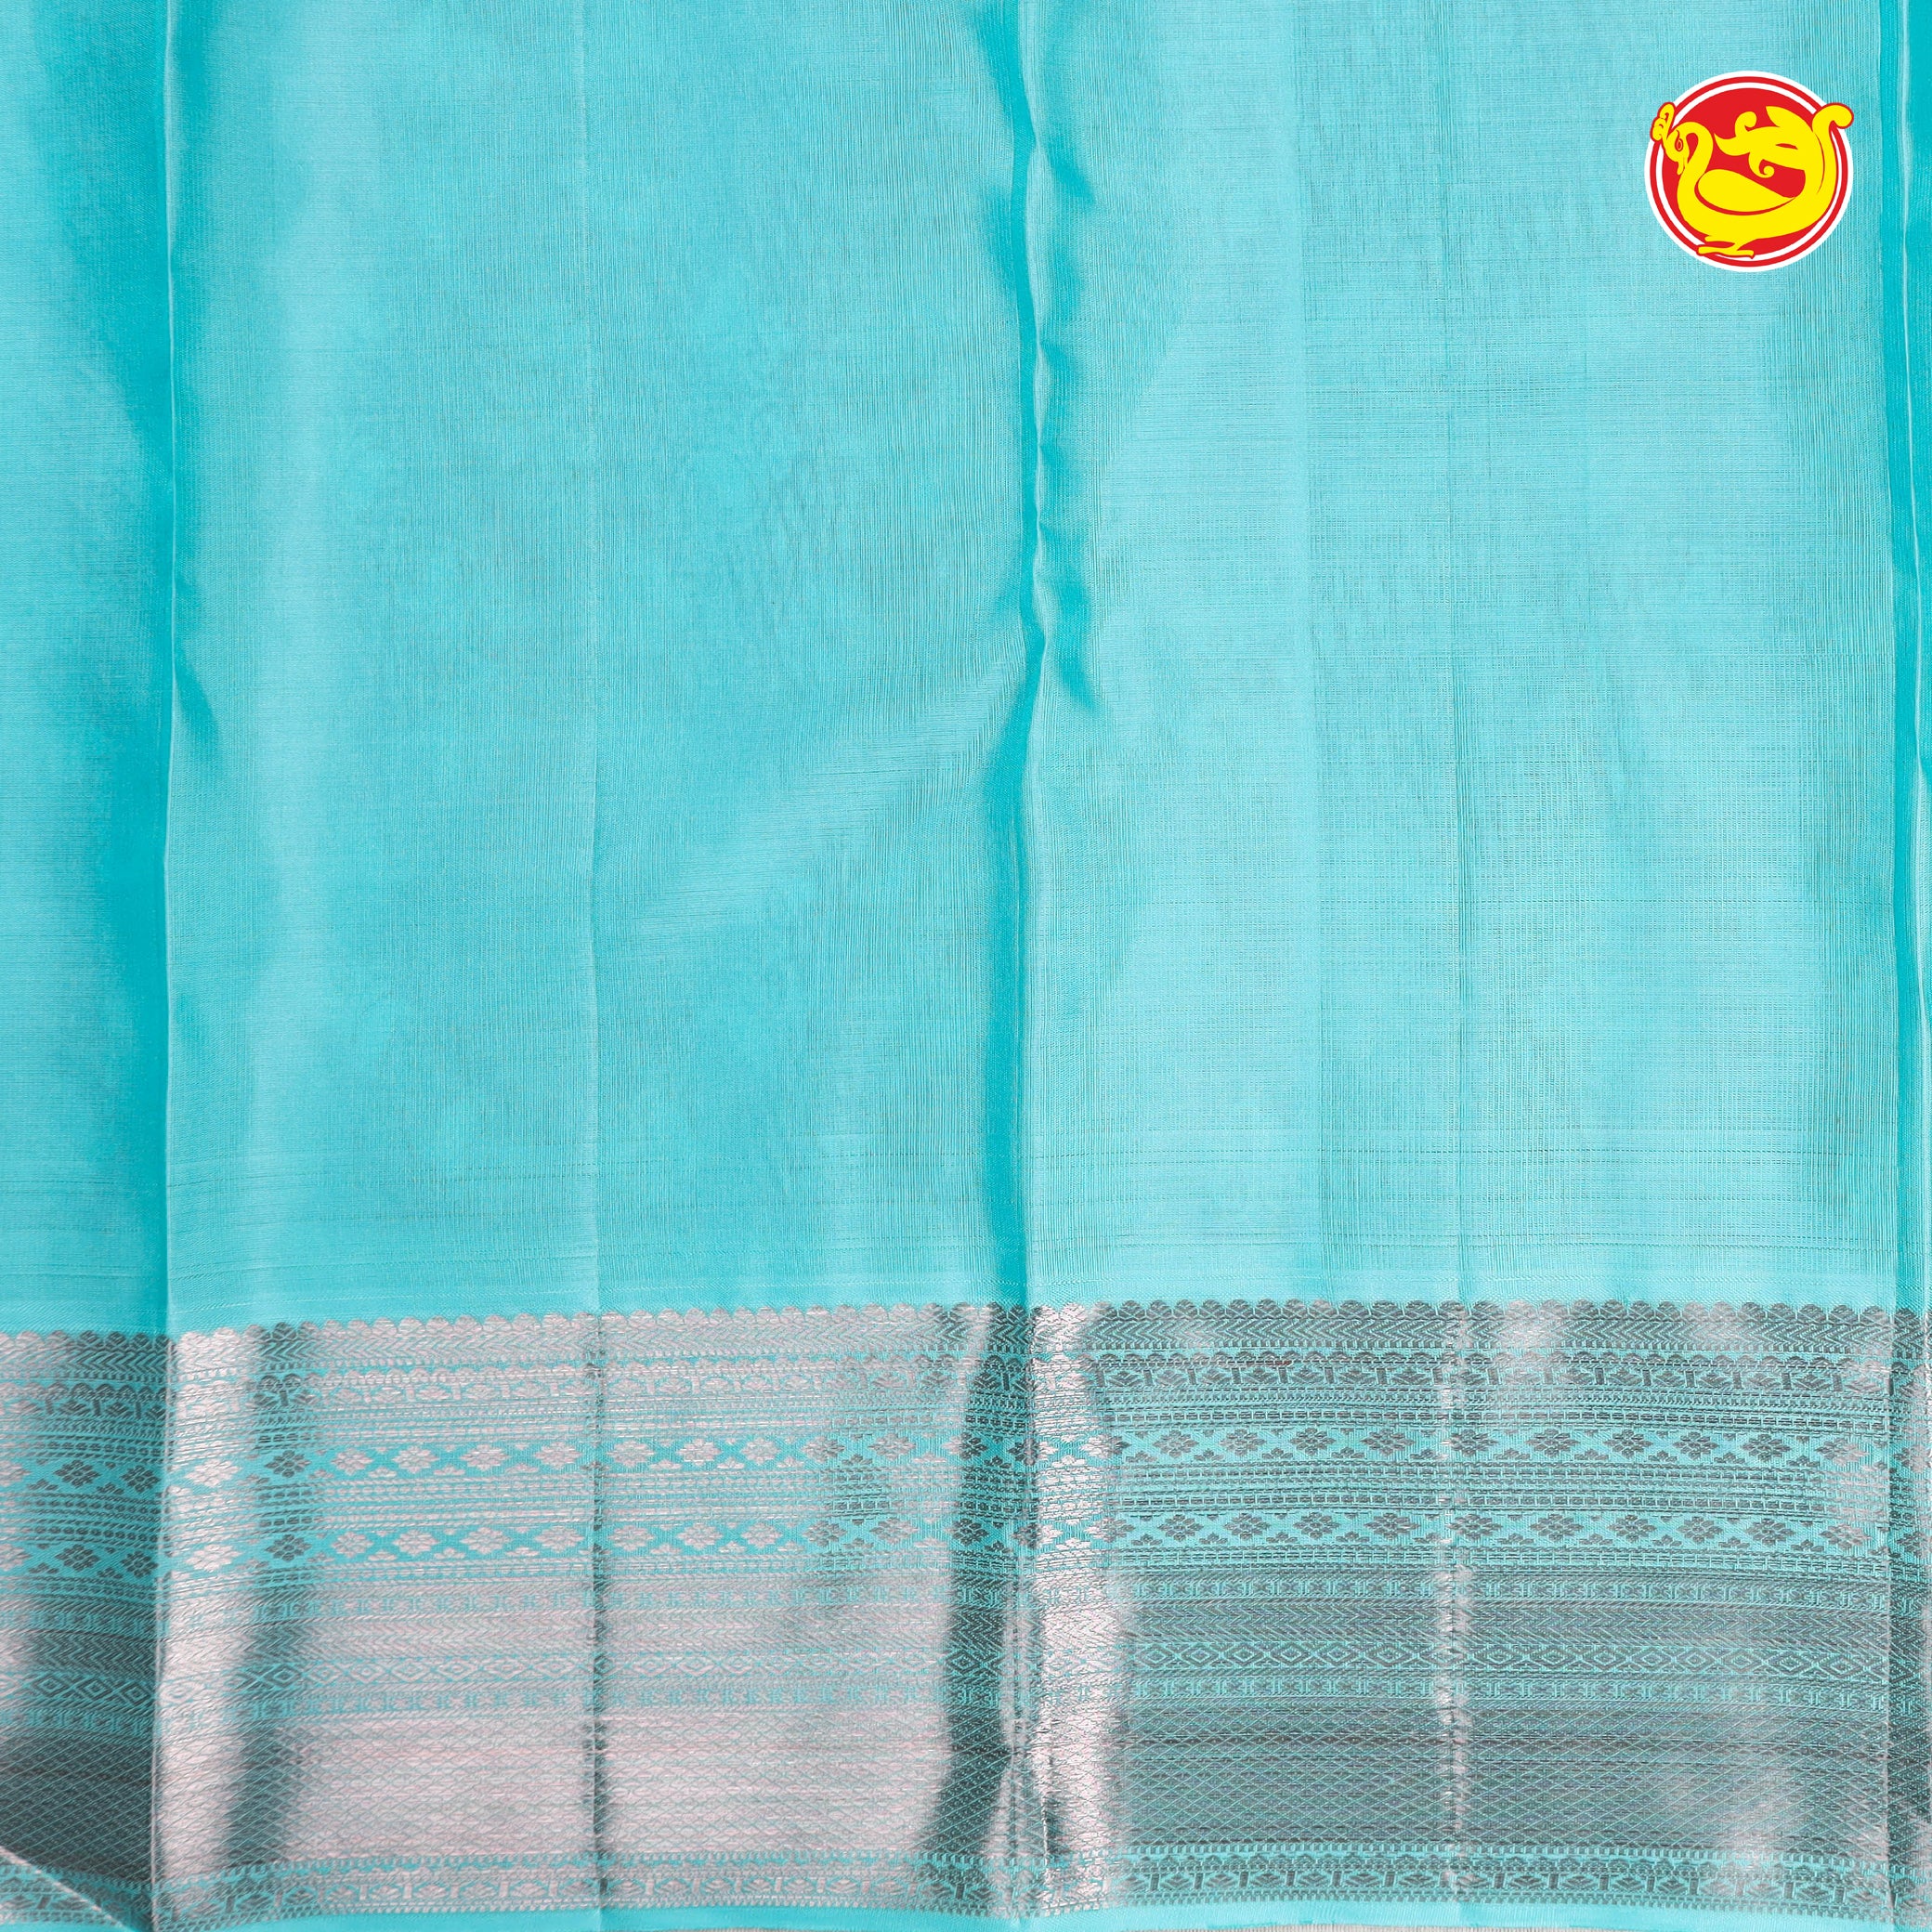 Sky blue colour soft silk saree